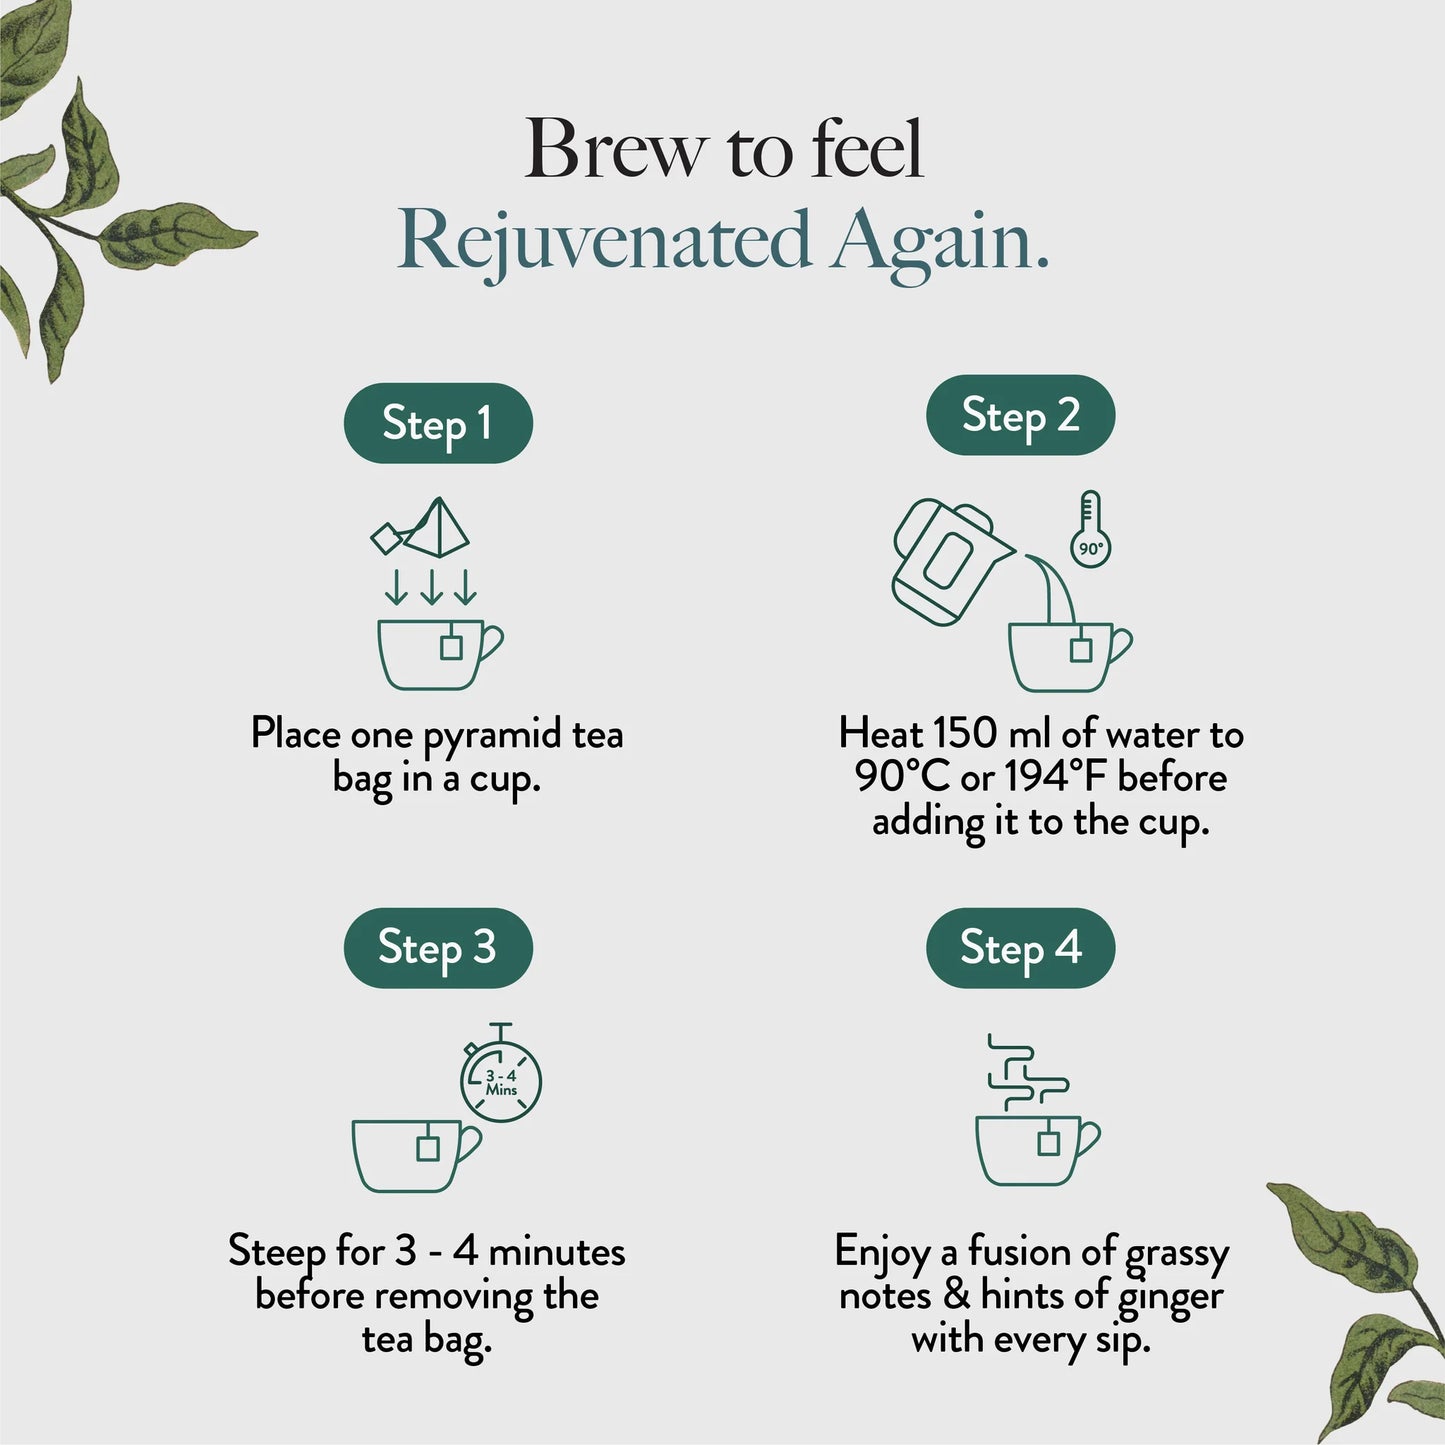 Wellbeing Cleanse Adaptogenic Herbal Tea